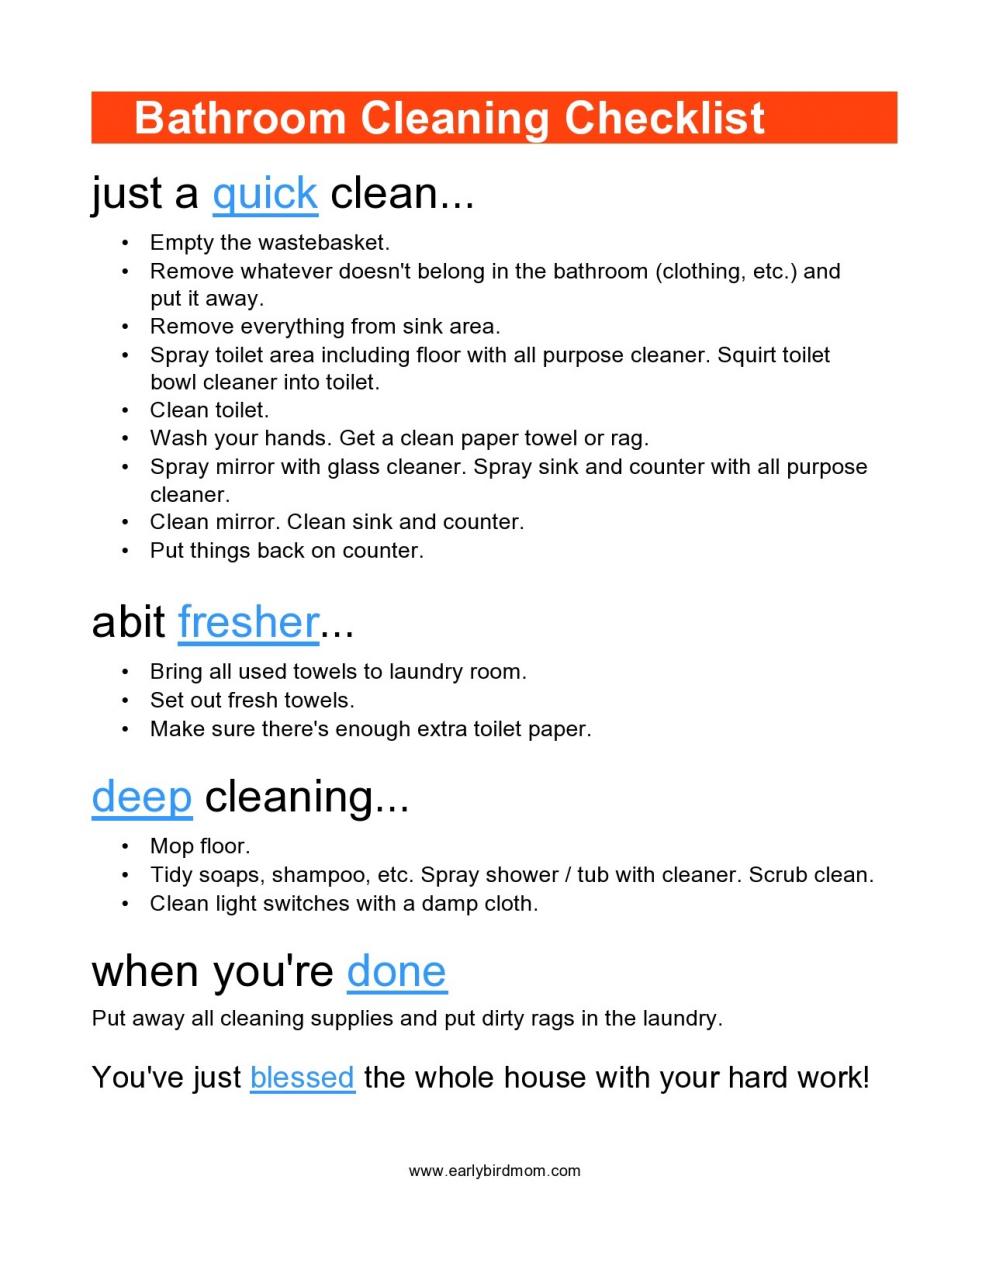 Liste de contrôle gratuite pour le nettoyage de la salle de bain 21